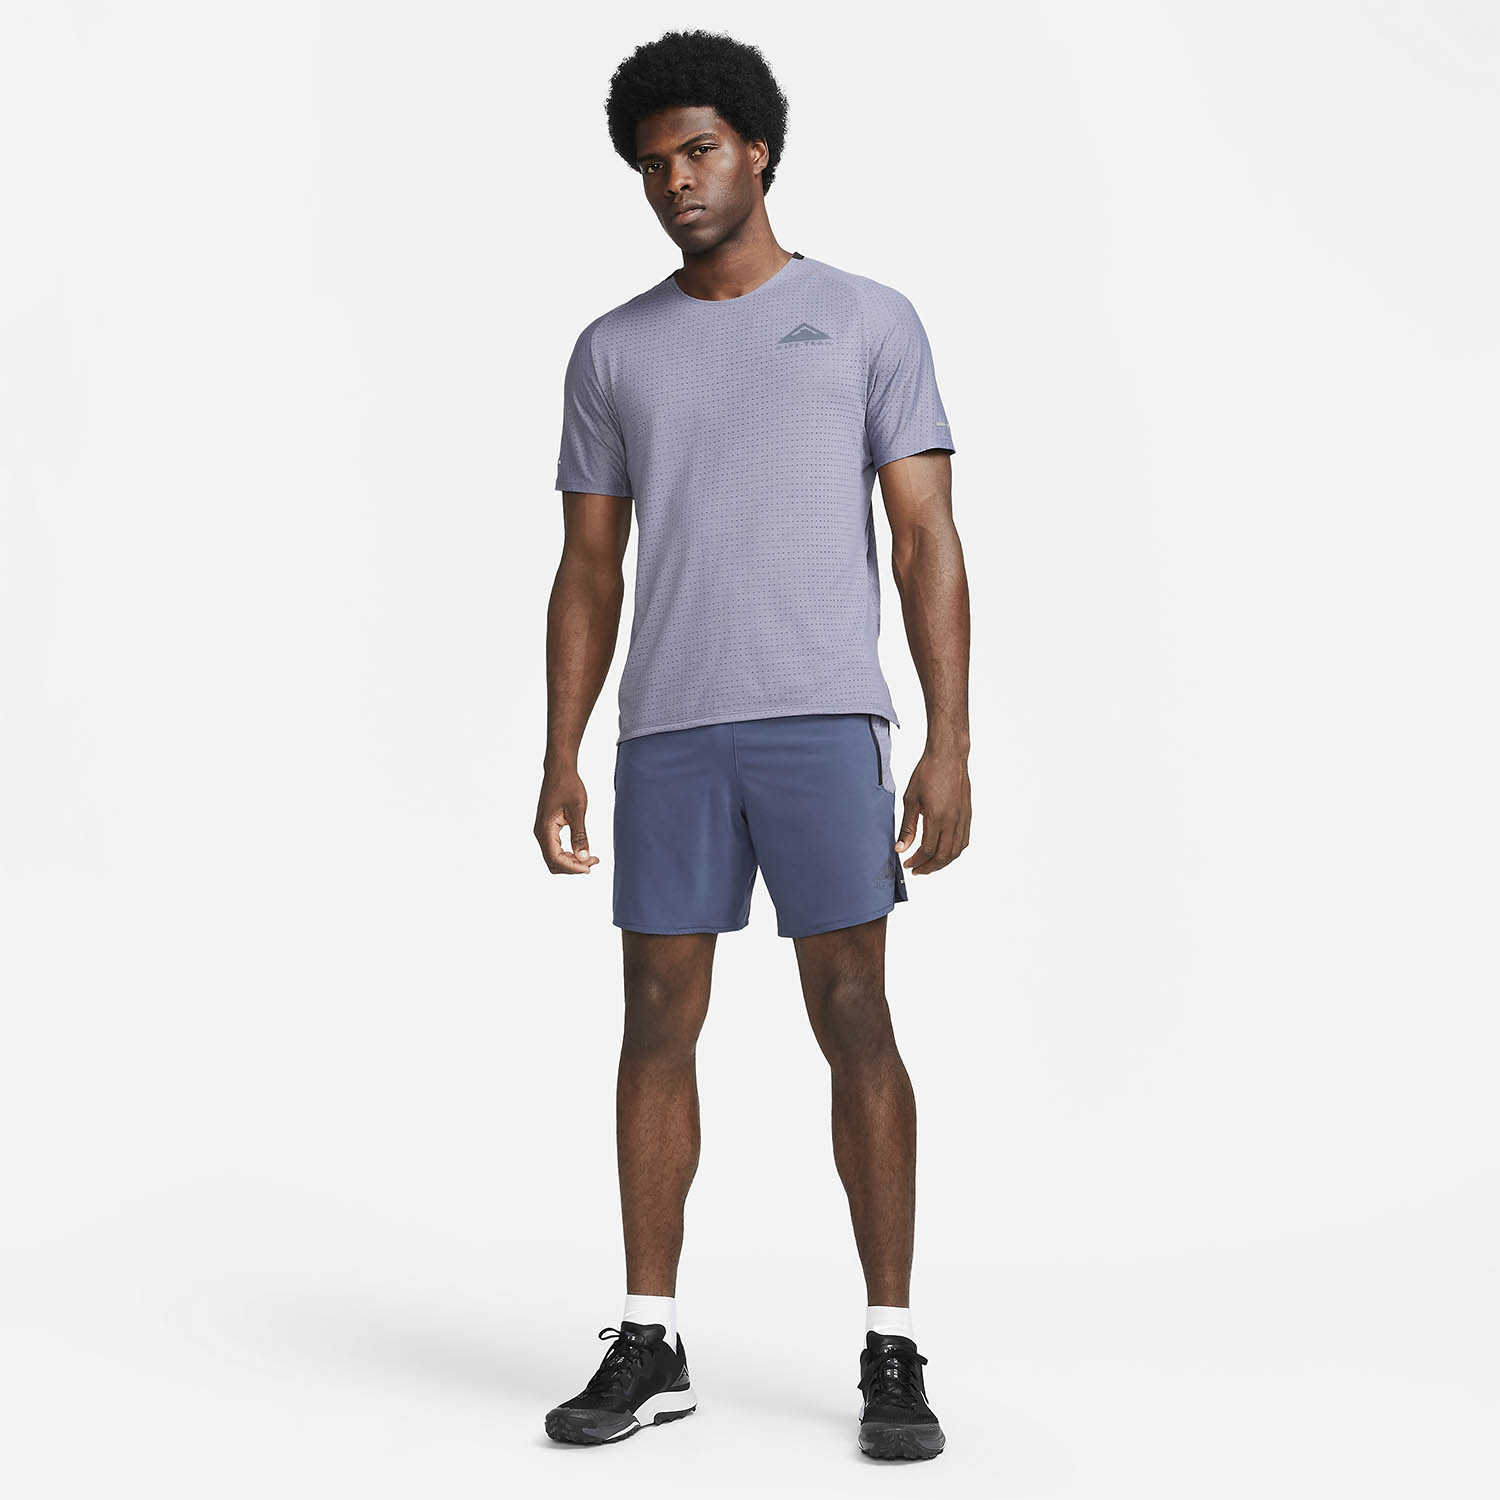 Nike Dri-FIT Solar Chase Camiseta - Light Carbon/Black